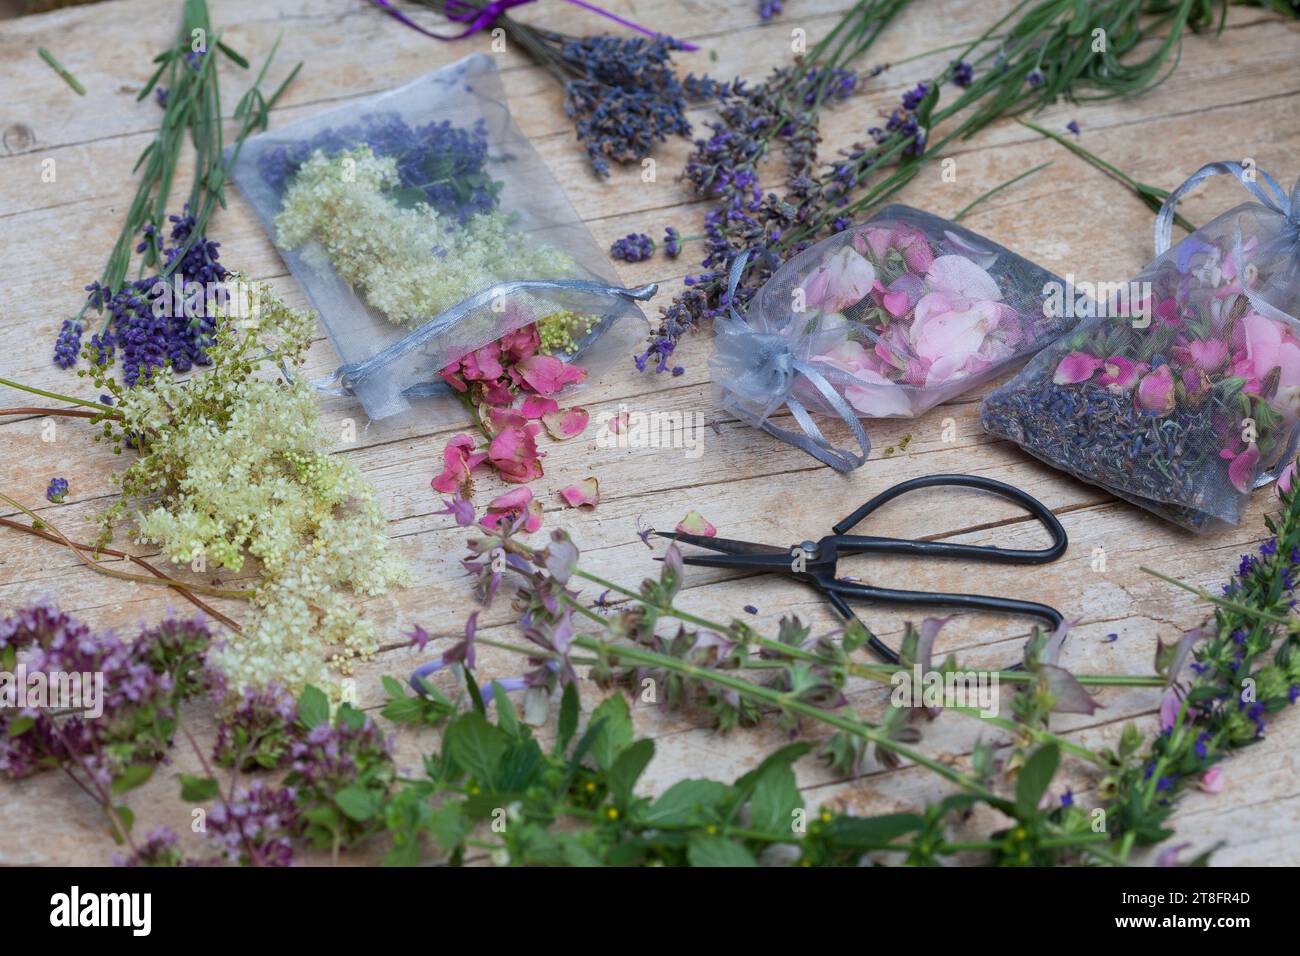 Duftsäckchen: verschiedene Duftpflanzen werden in ein Gazesäckchen gefüllt: Aroma, Duft, Aromapflanze, Duftpflanze, perfume, aroma. Echter Lavendel, L Stock Photo